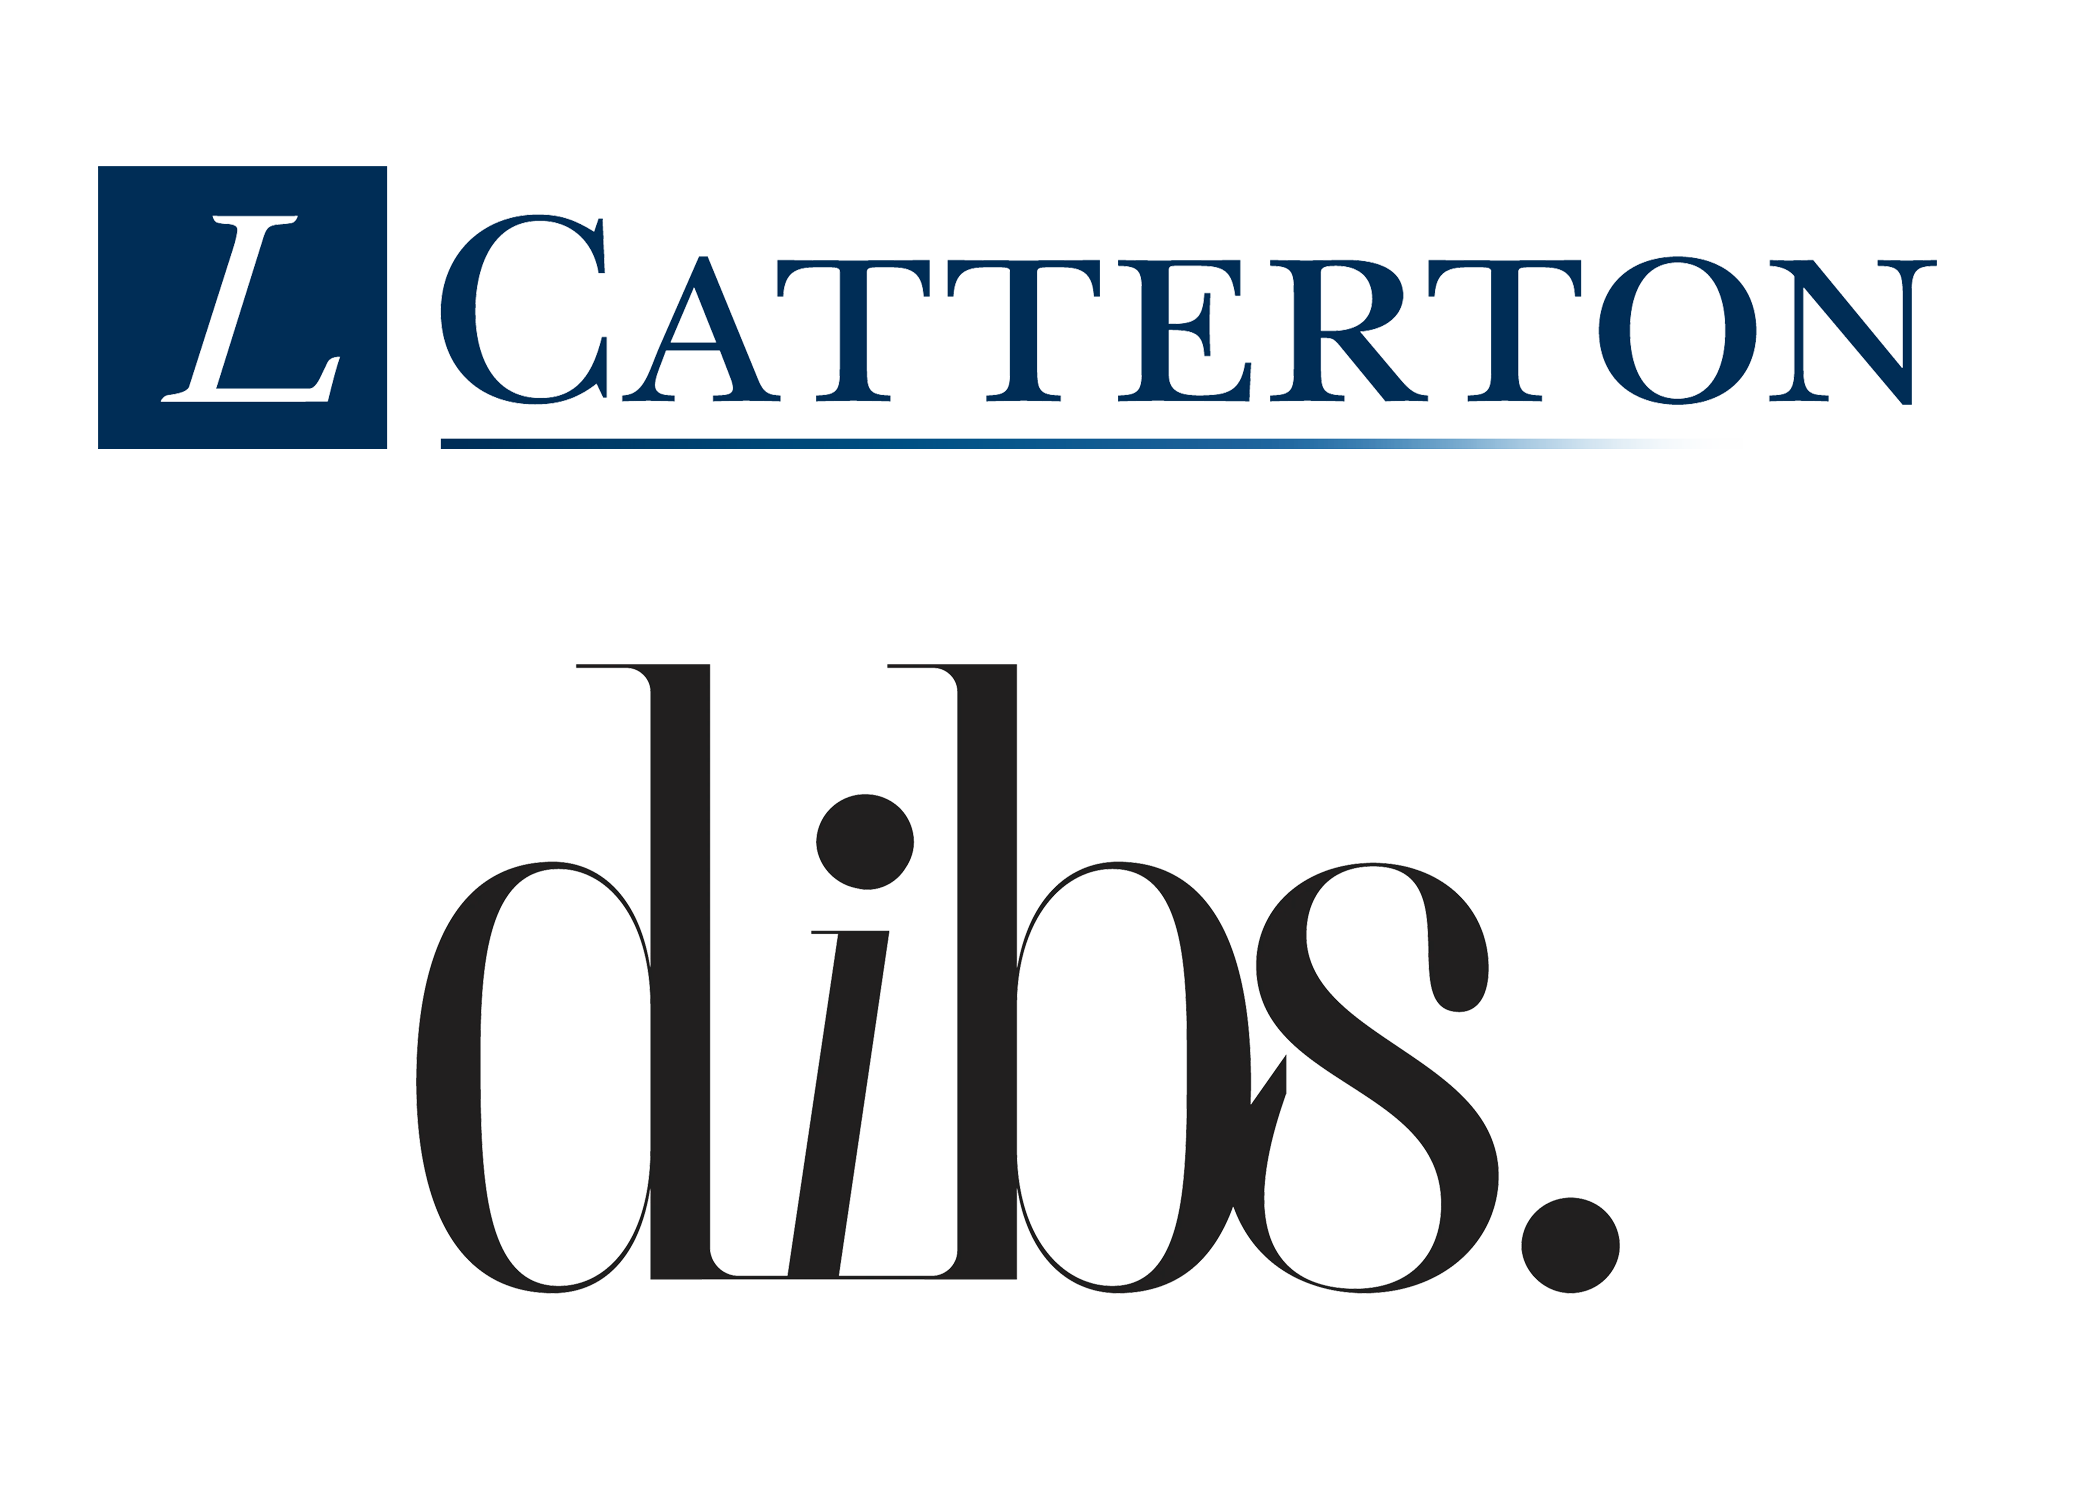 l catterton logo